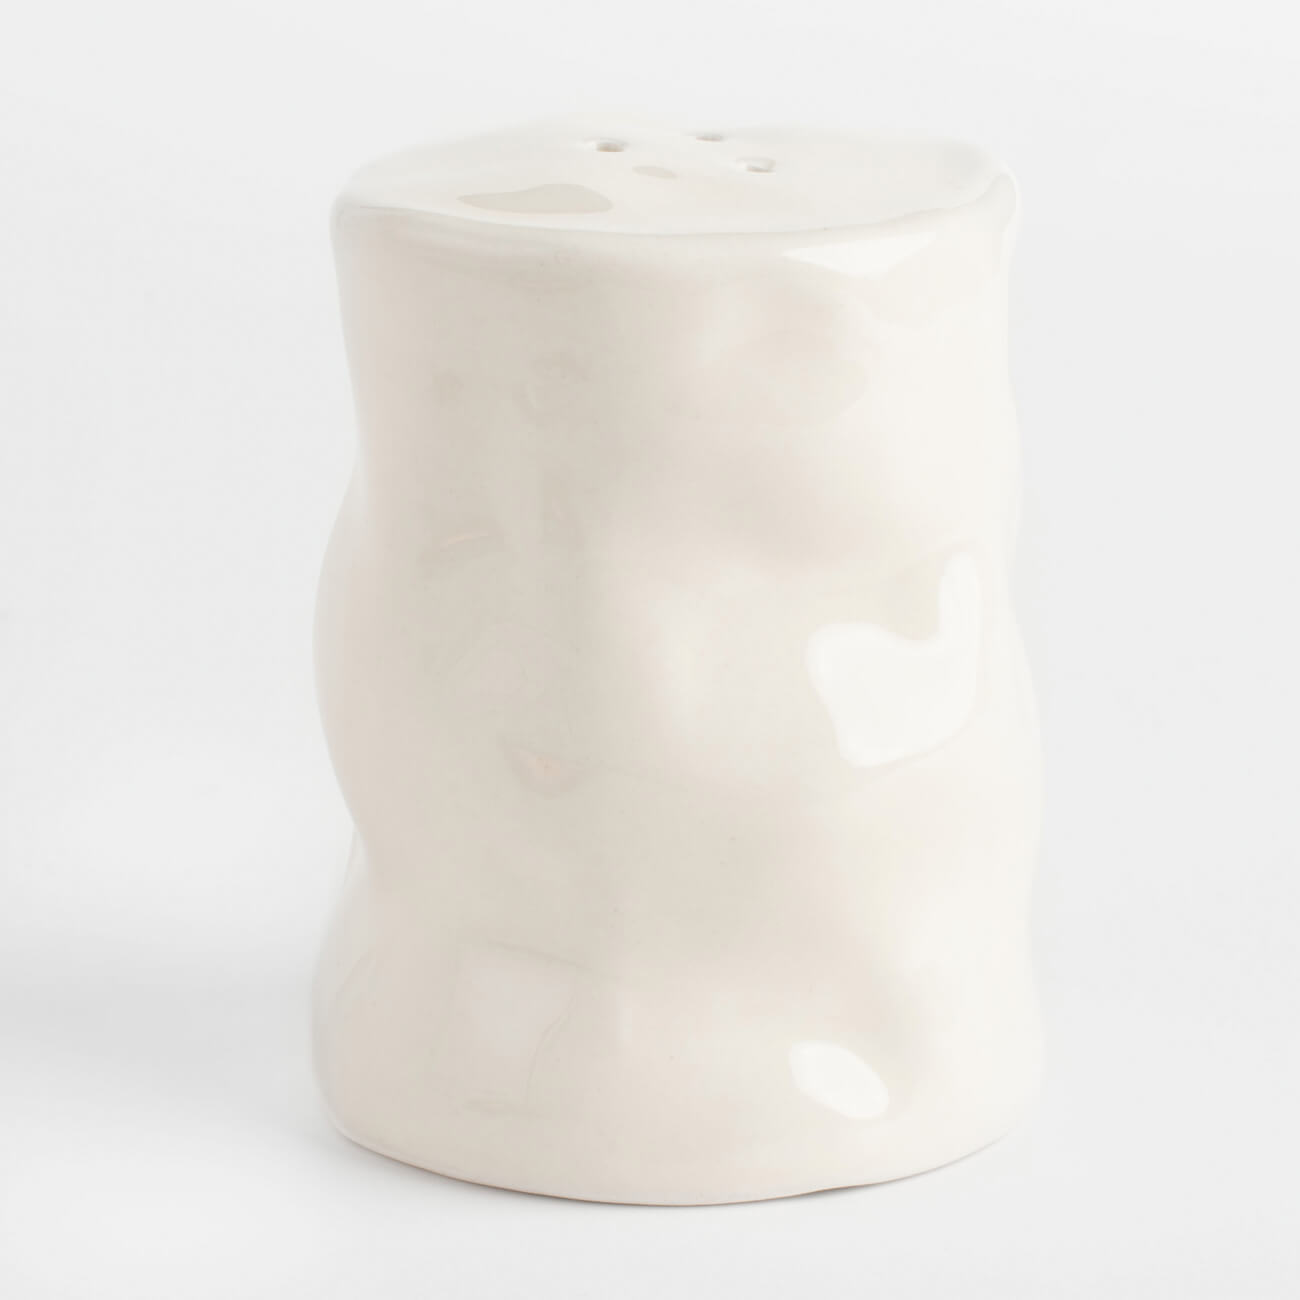 емкость для соли или перца 7 см керамика молочная мятый эффект crumple Емкость для соли или перца, 7 см, керамика, молочная, Мятый эффект, Crumple